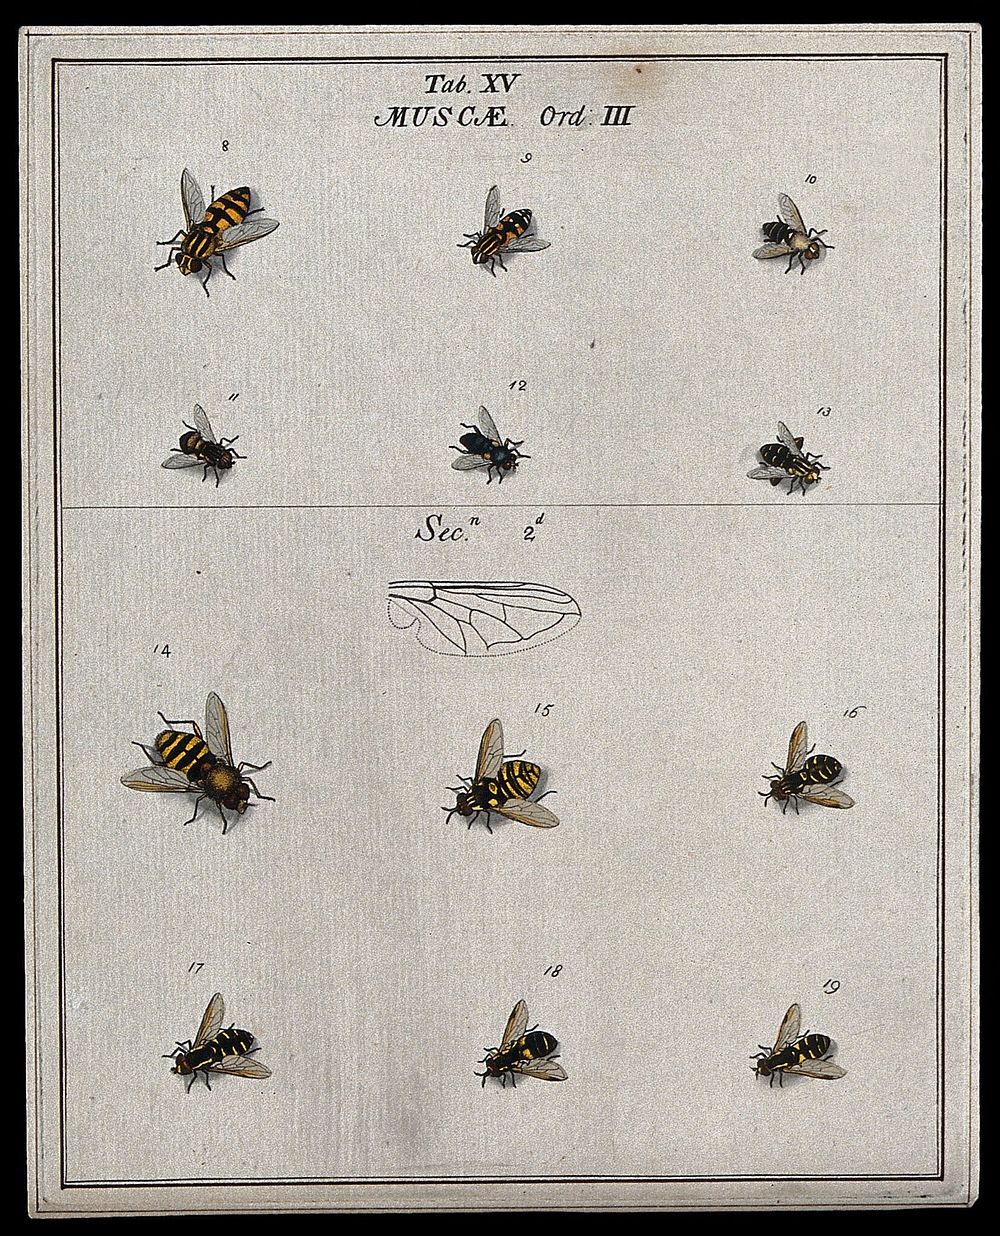 Twelve flies (Muscæ species). Coloured etching by M. Harris, ca. 1766.